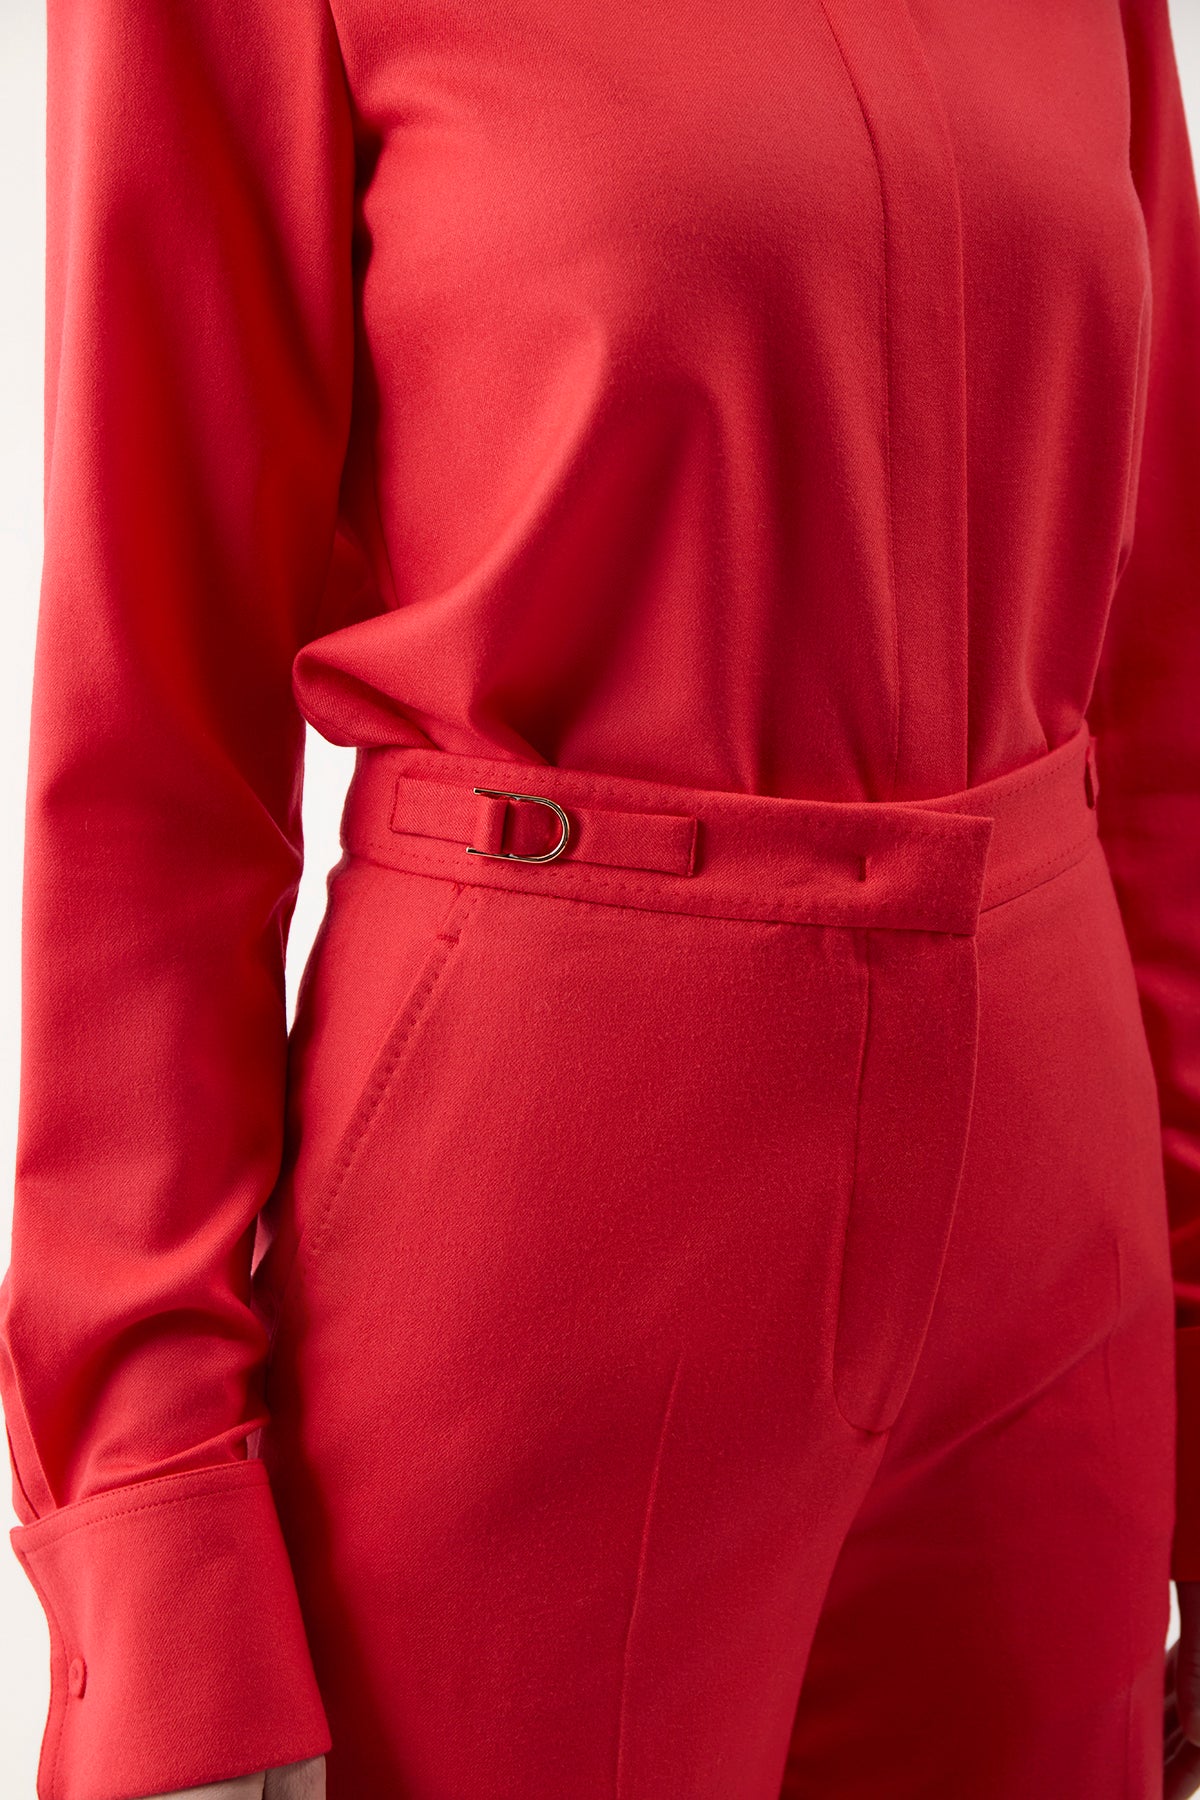 VESTA RED – PariPari Lingerie, underwear producer